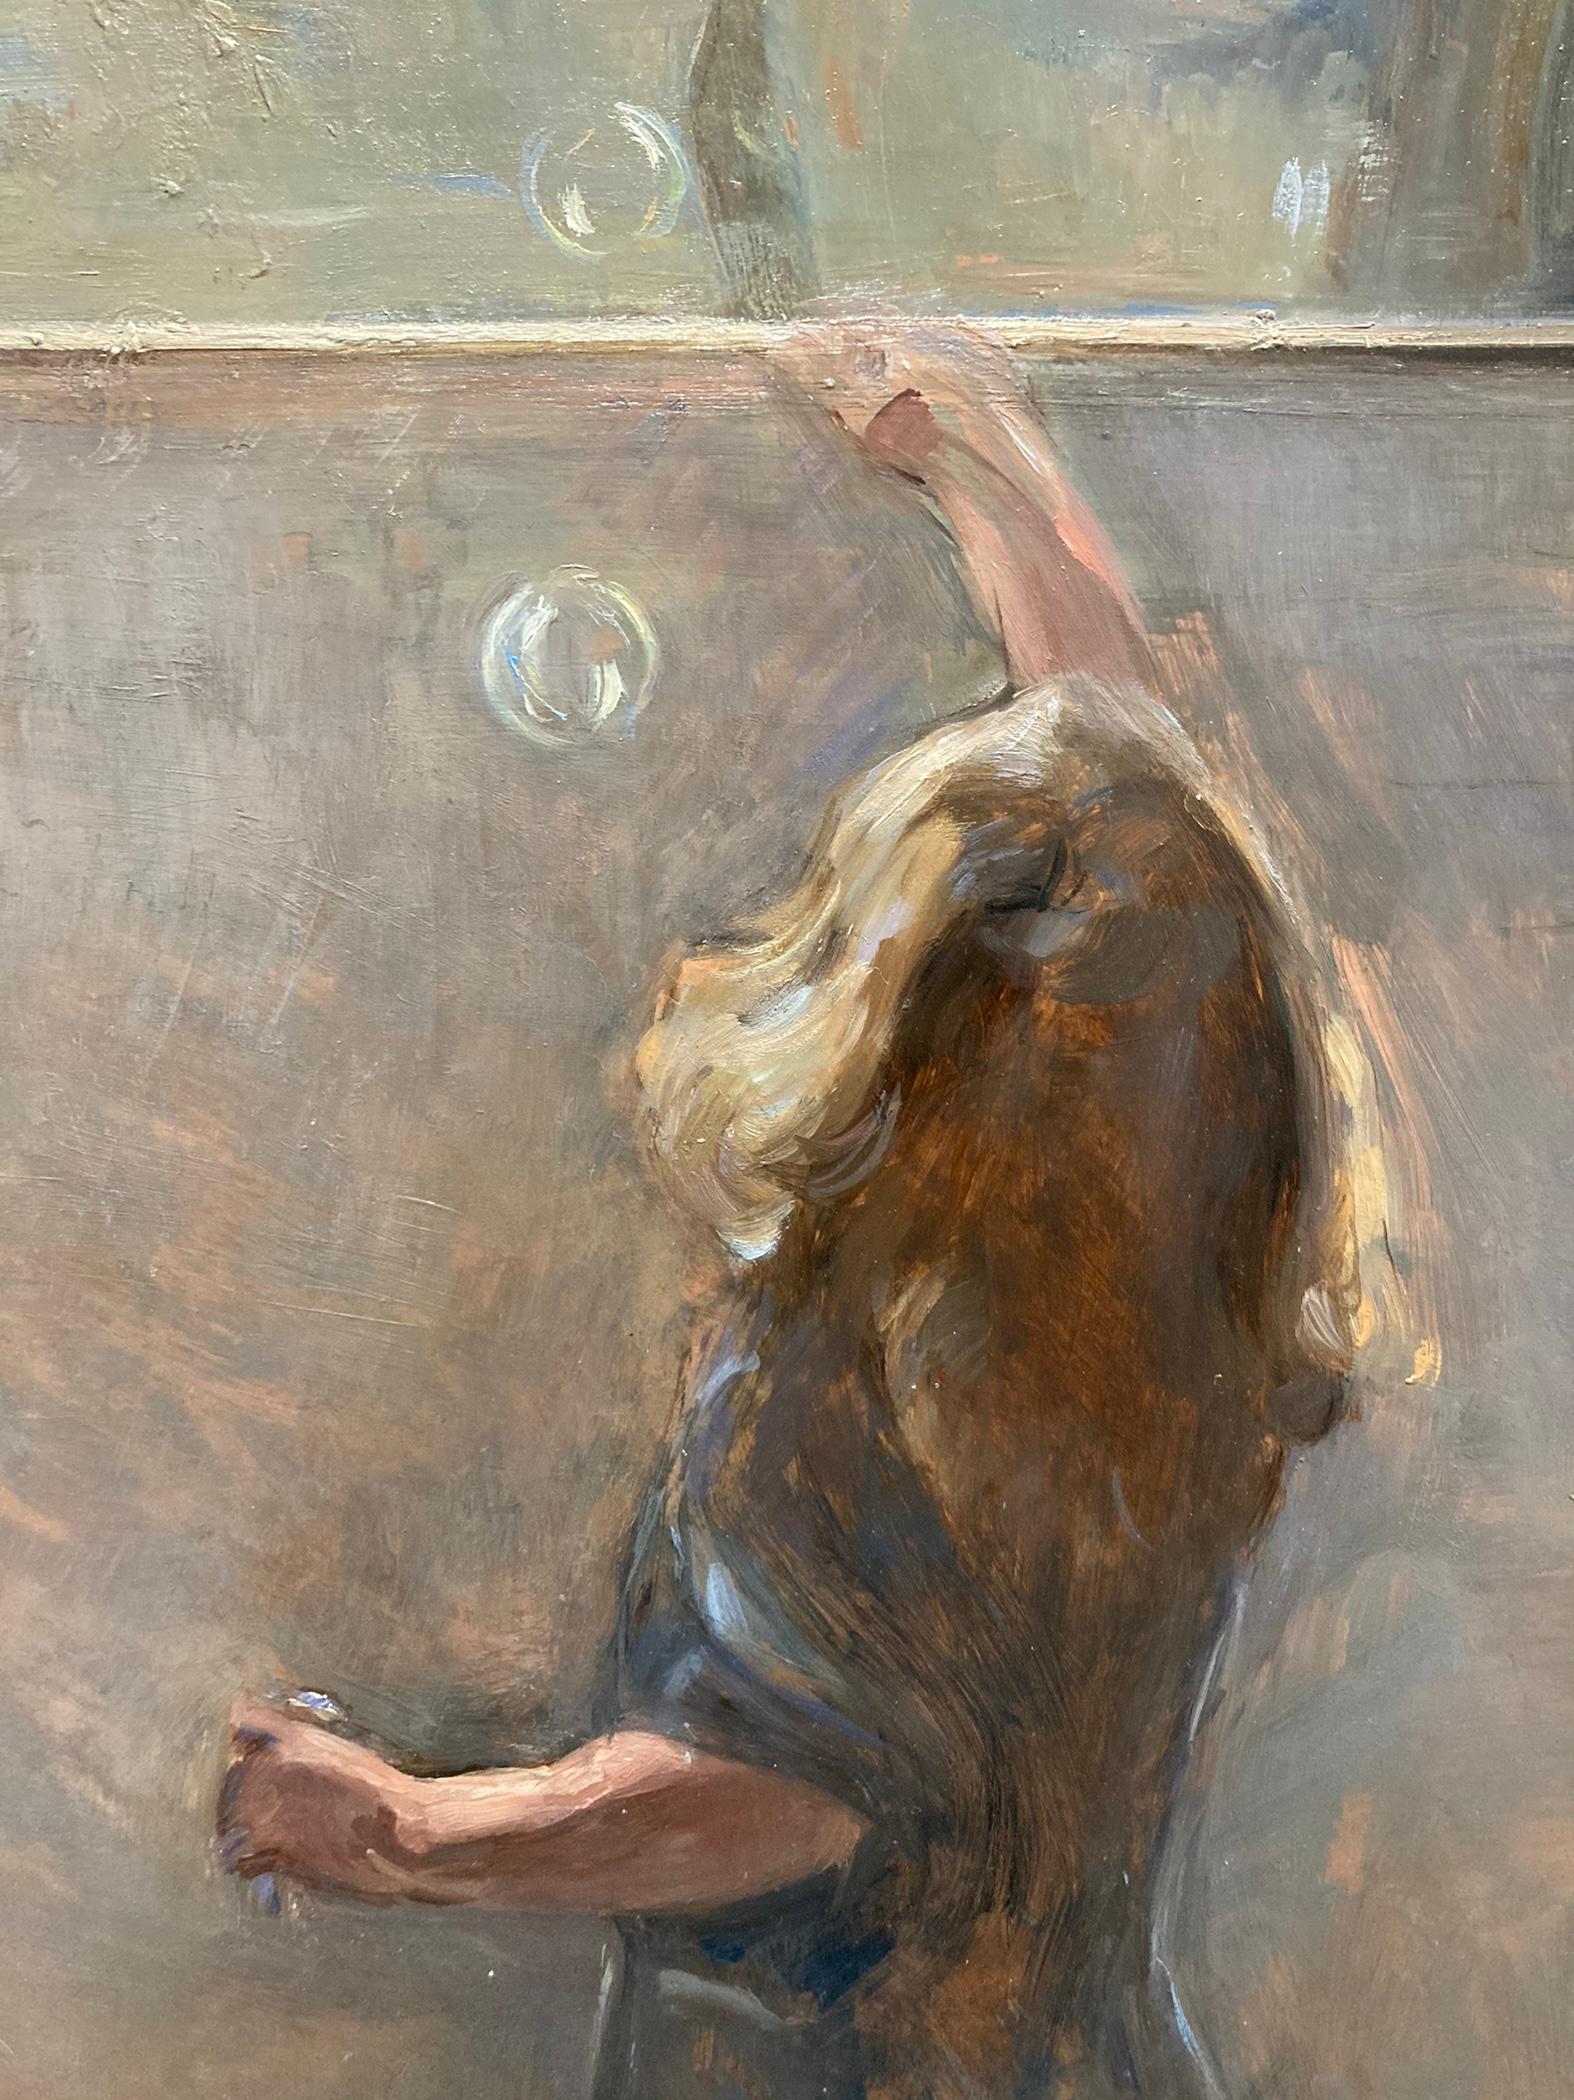 Une peinture fantaisiste d'une petite fille soufflant des bulles par la fenêtre dans un paysage italien idyllique.

Biographie de l'artiste :
Melissa Franklin Sanchez est née en 1984, dans le Warwickshire, en Angleterre. En 2002, elle a obtenu son